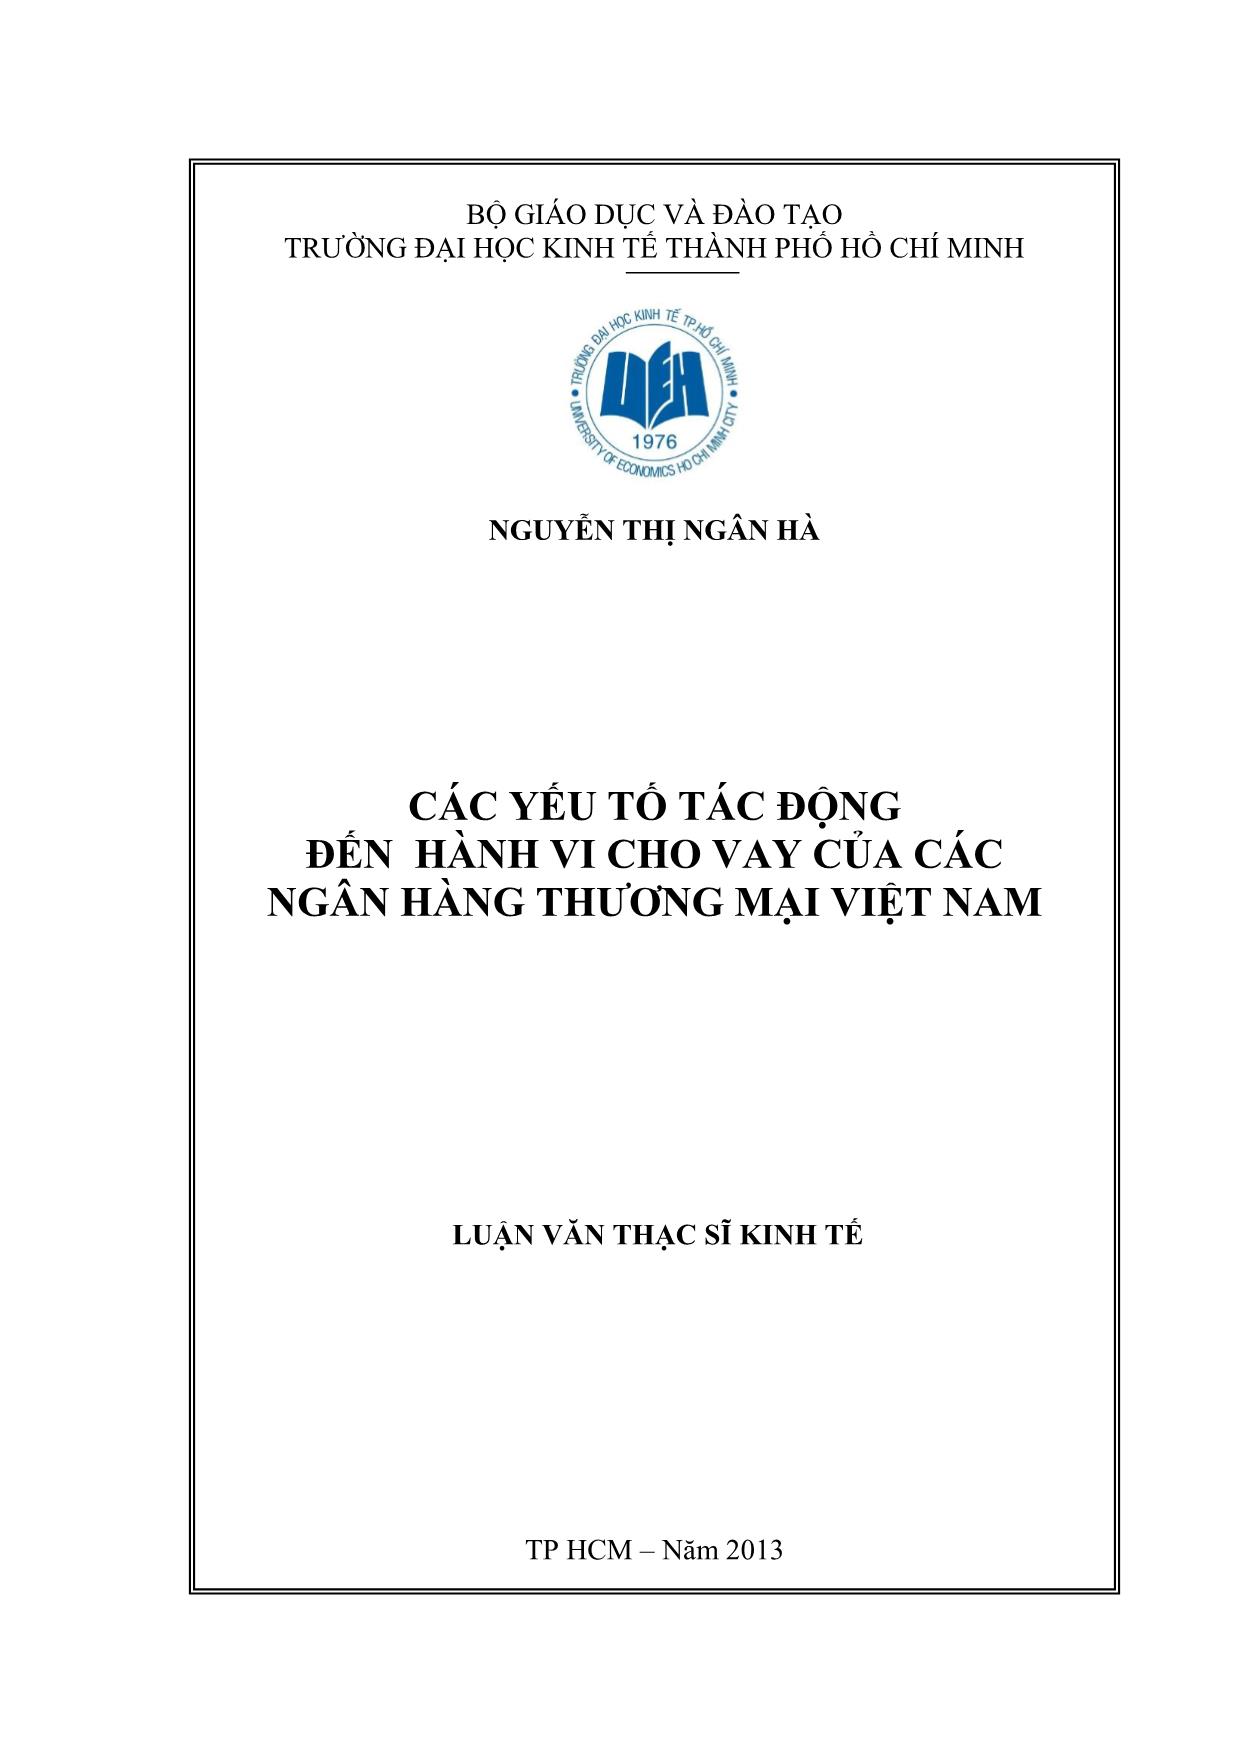 Luận văn Các yếu tố tác động đến hành vi cho vay của các ngân hàng thương mại Việt Nam trang 1